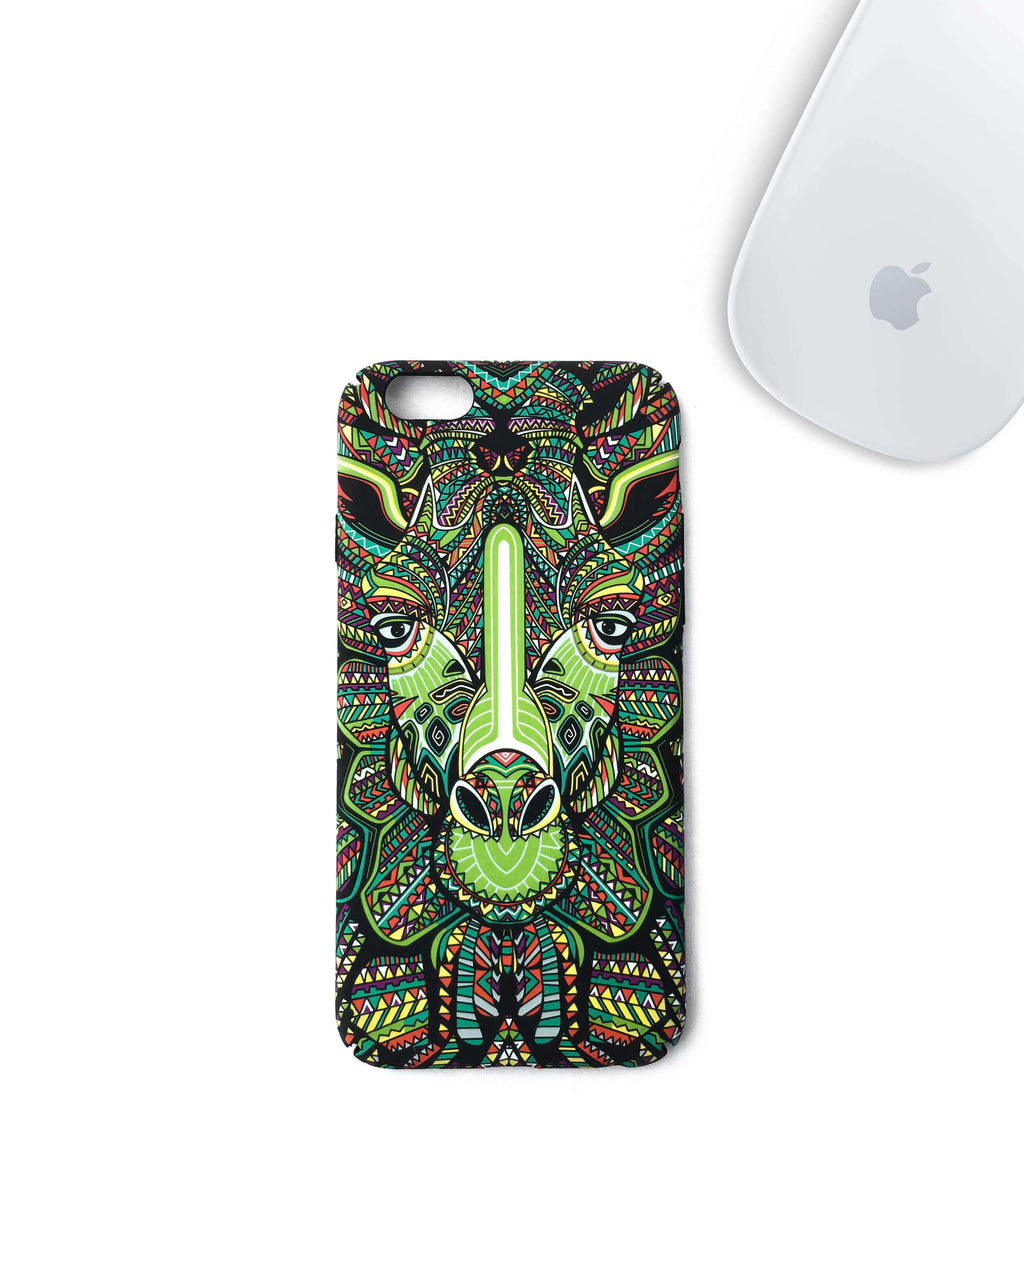 Giraffe iPhone Case (Glows in the Dark) - Cloud Accessories, LLC